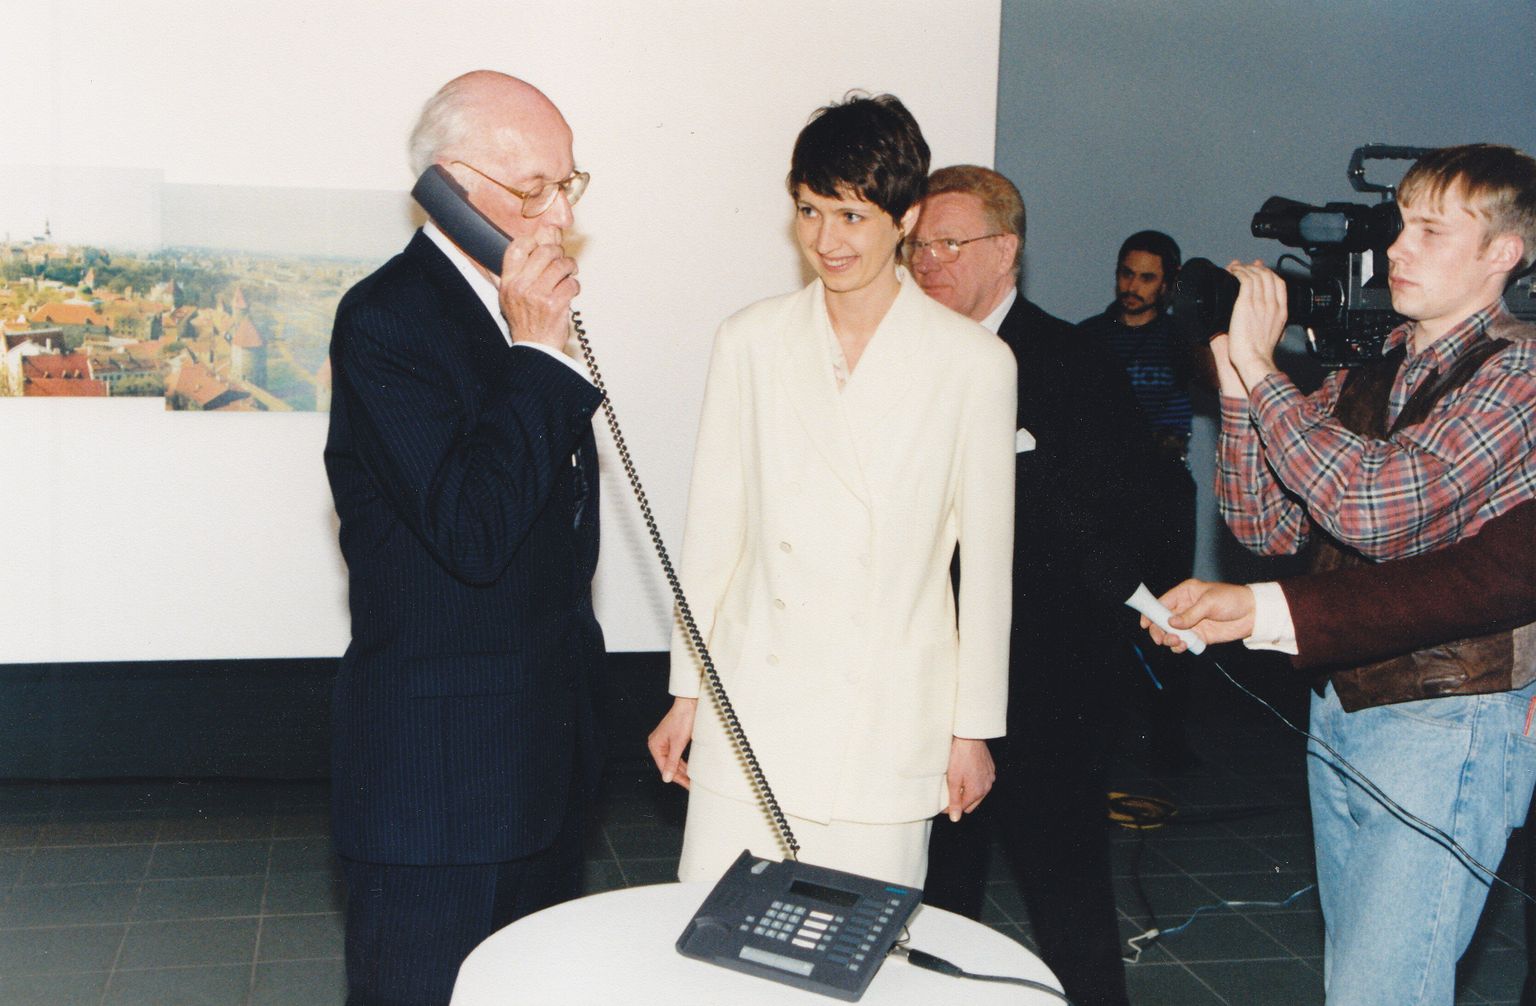 Helo Meigas vaatab, kuidas president Lennart Meri teeb 31. mail 1996 Tallinna börsi esimest tehingut.